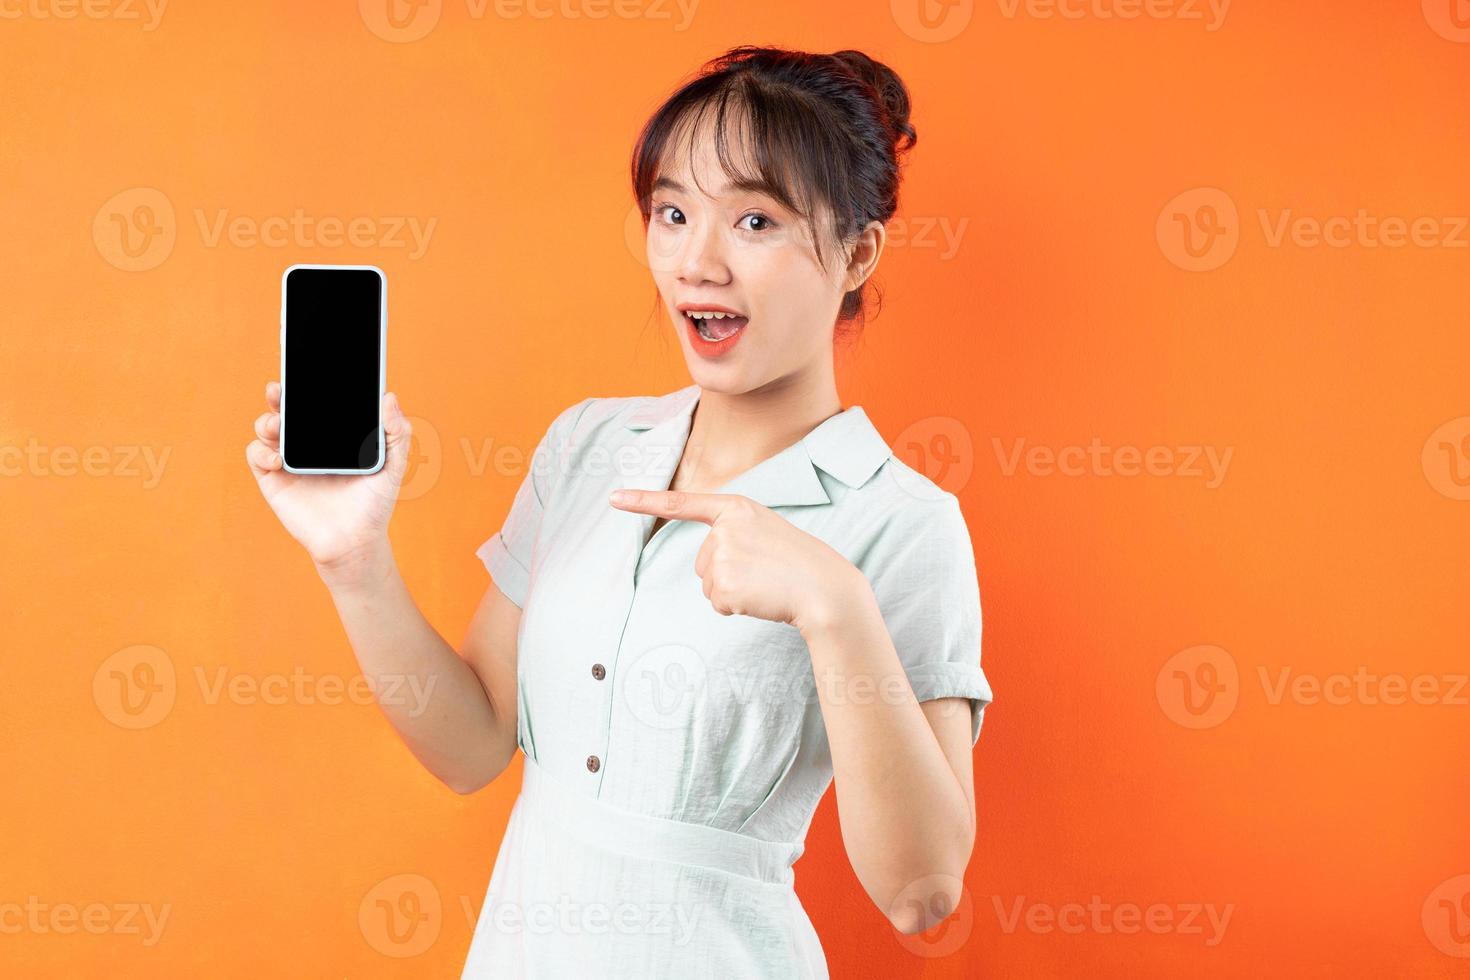 retrato de jovem mostrando a tela do telefone, isolado em um fundo laranja foto